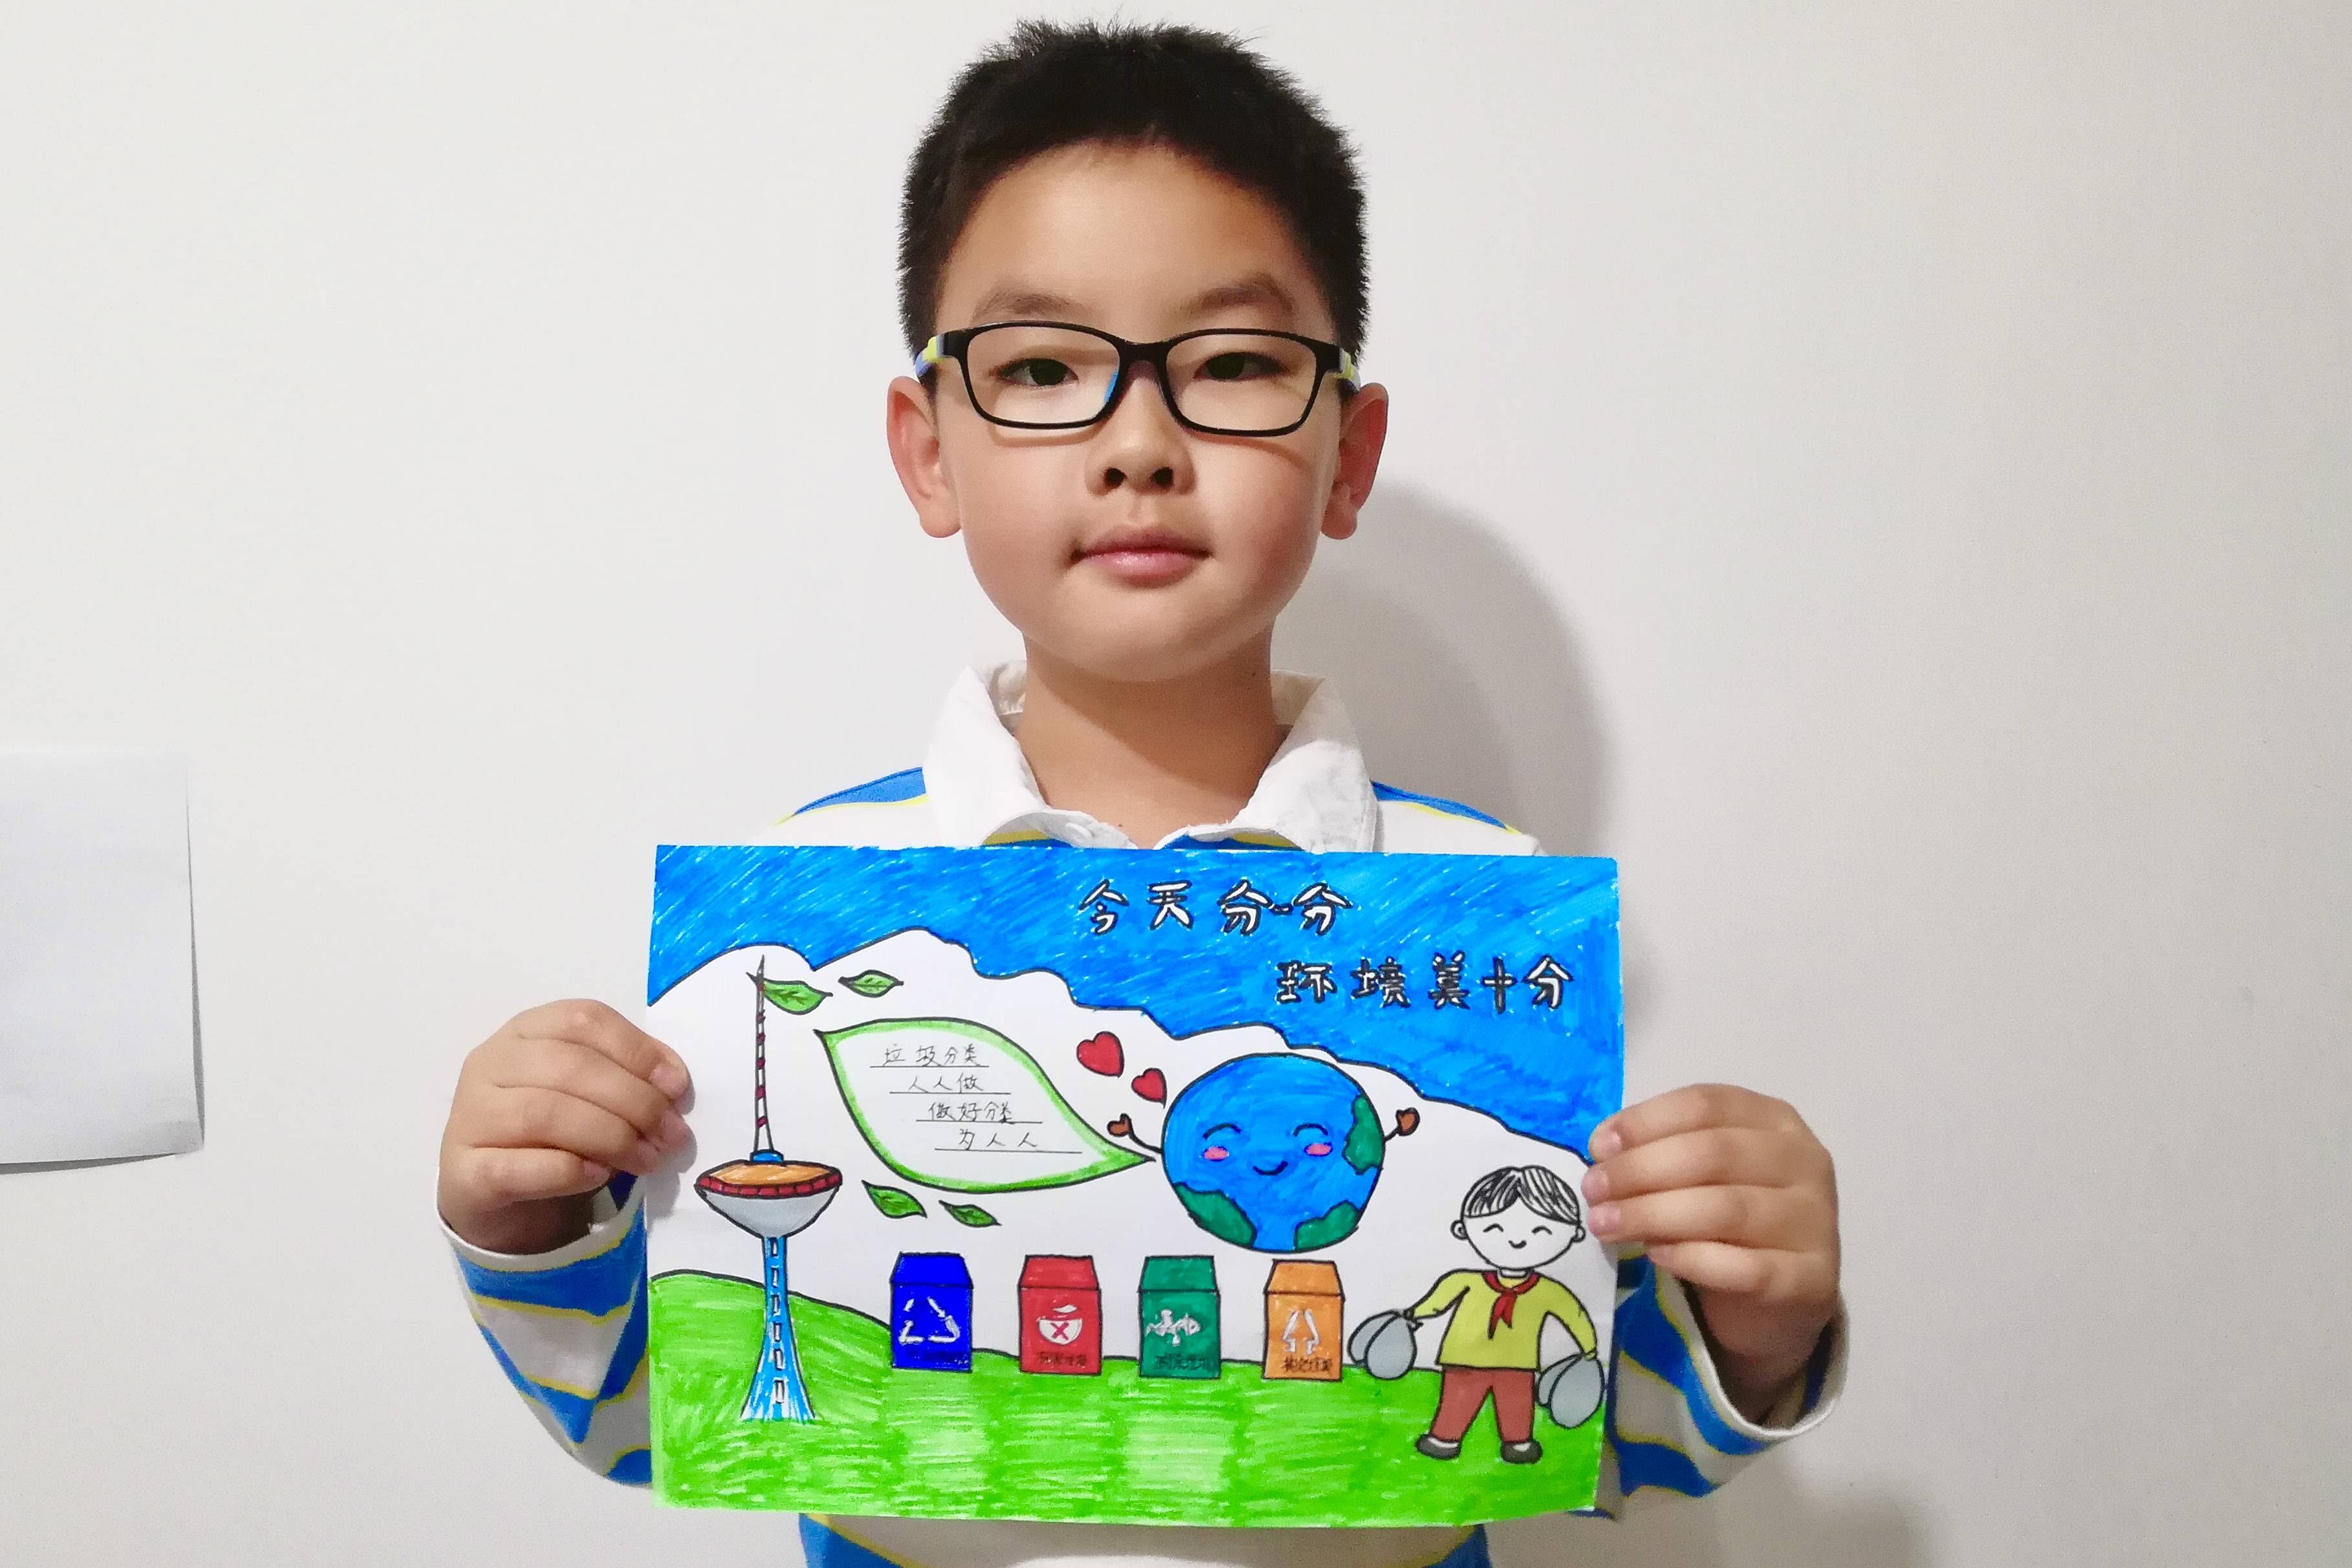 沈阳小学生垃圾分类绘画作品展示4868幅